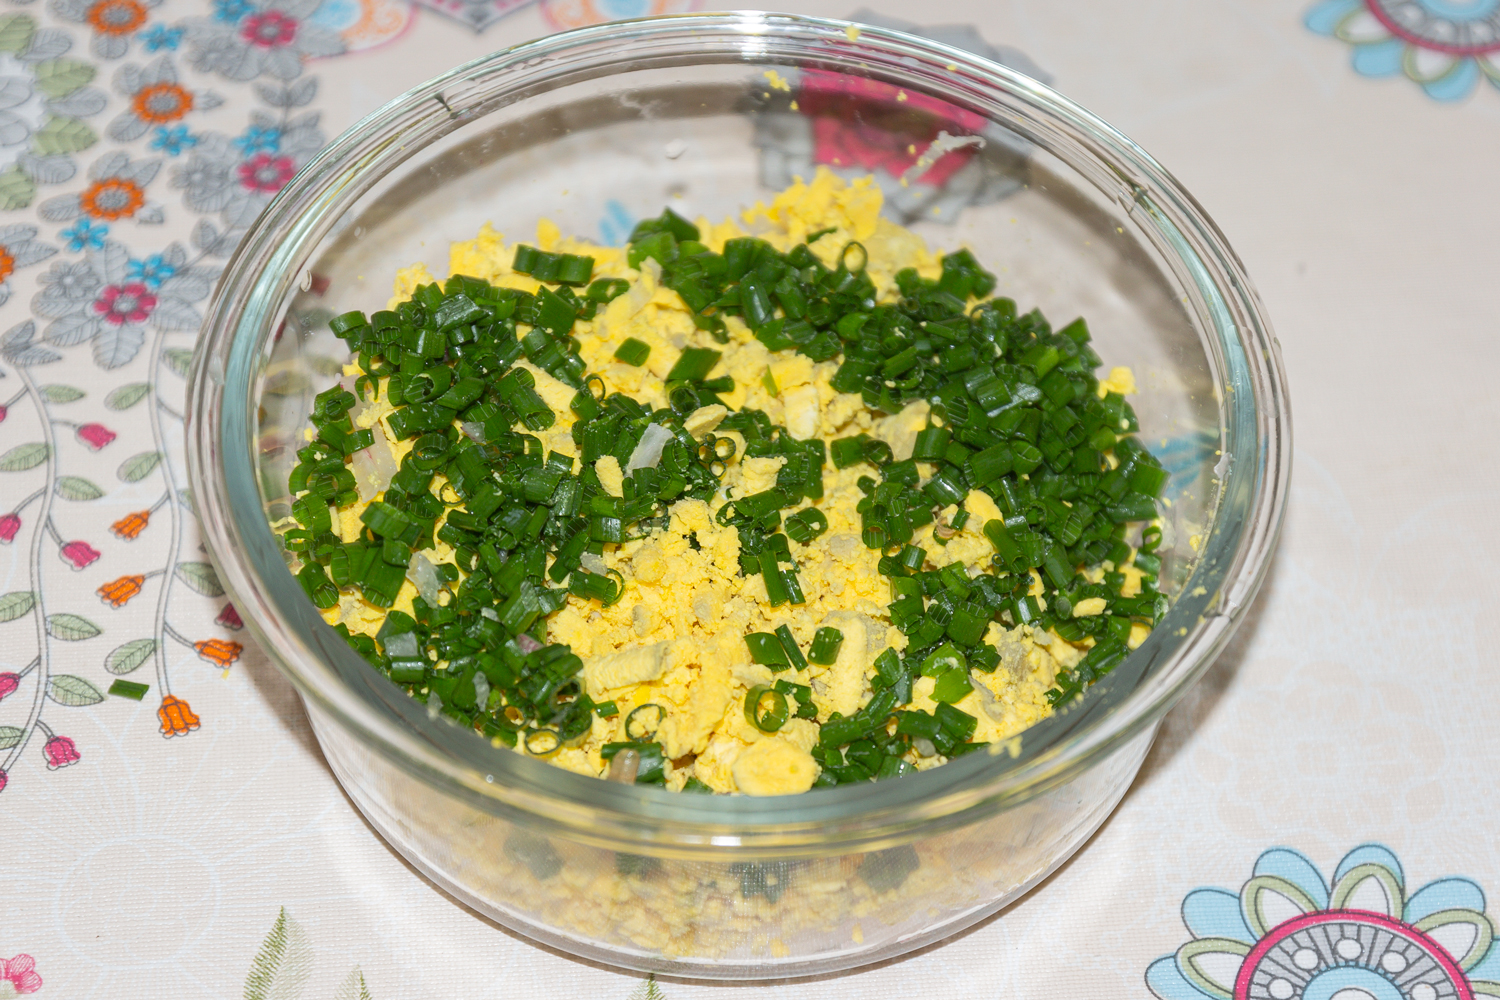 начинка приготовленная по рецепту Яйца, фаршированные редисом и зелёным луком